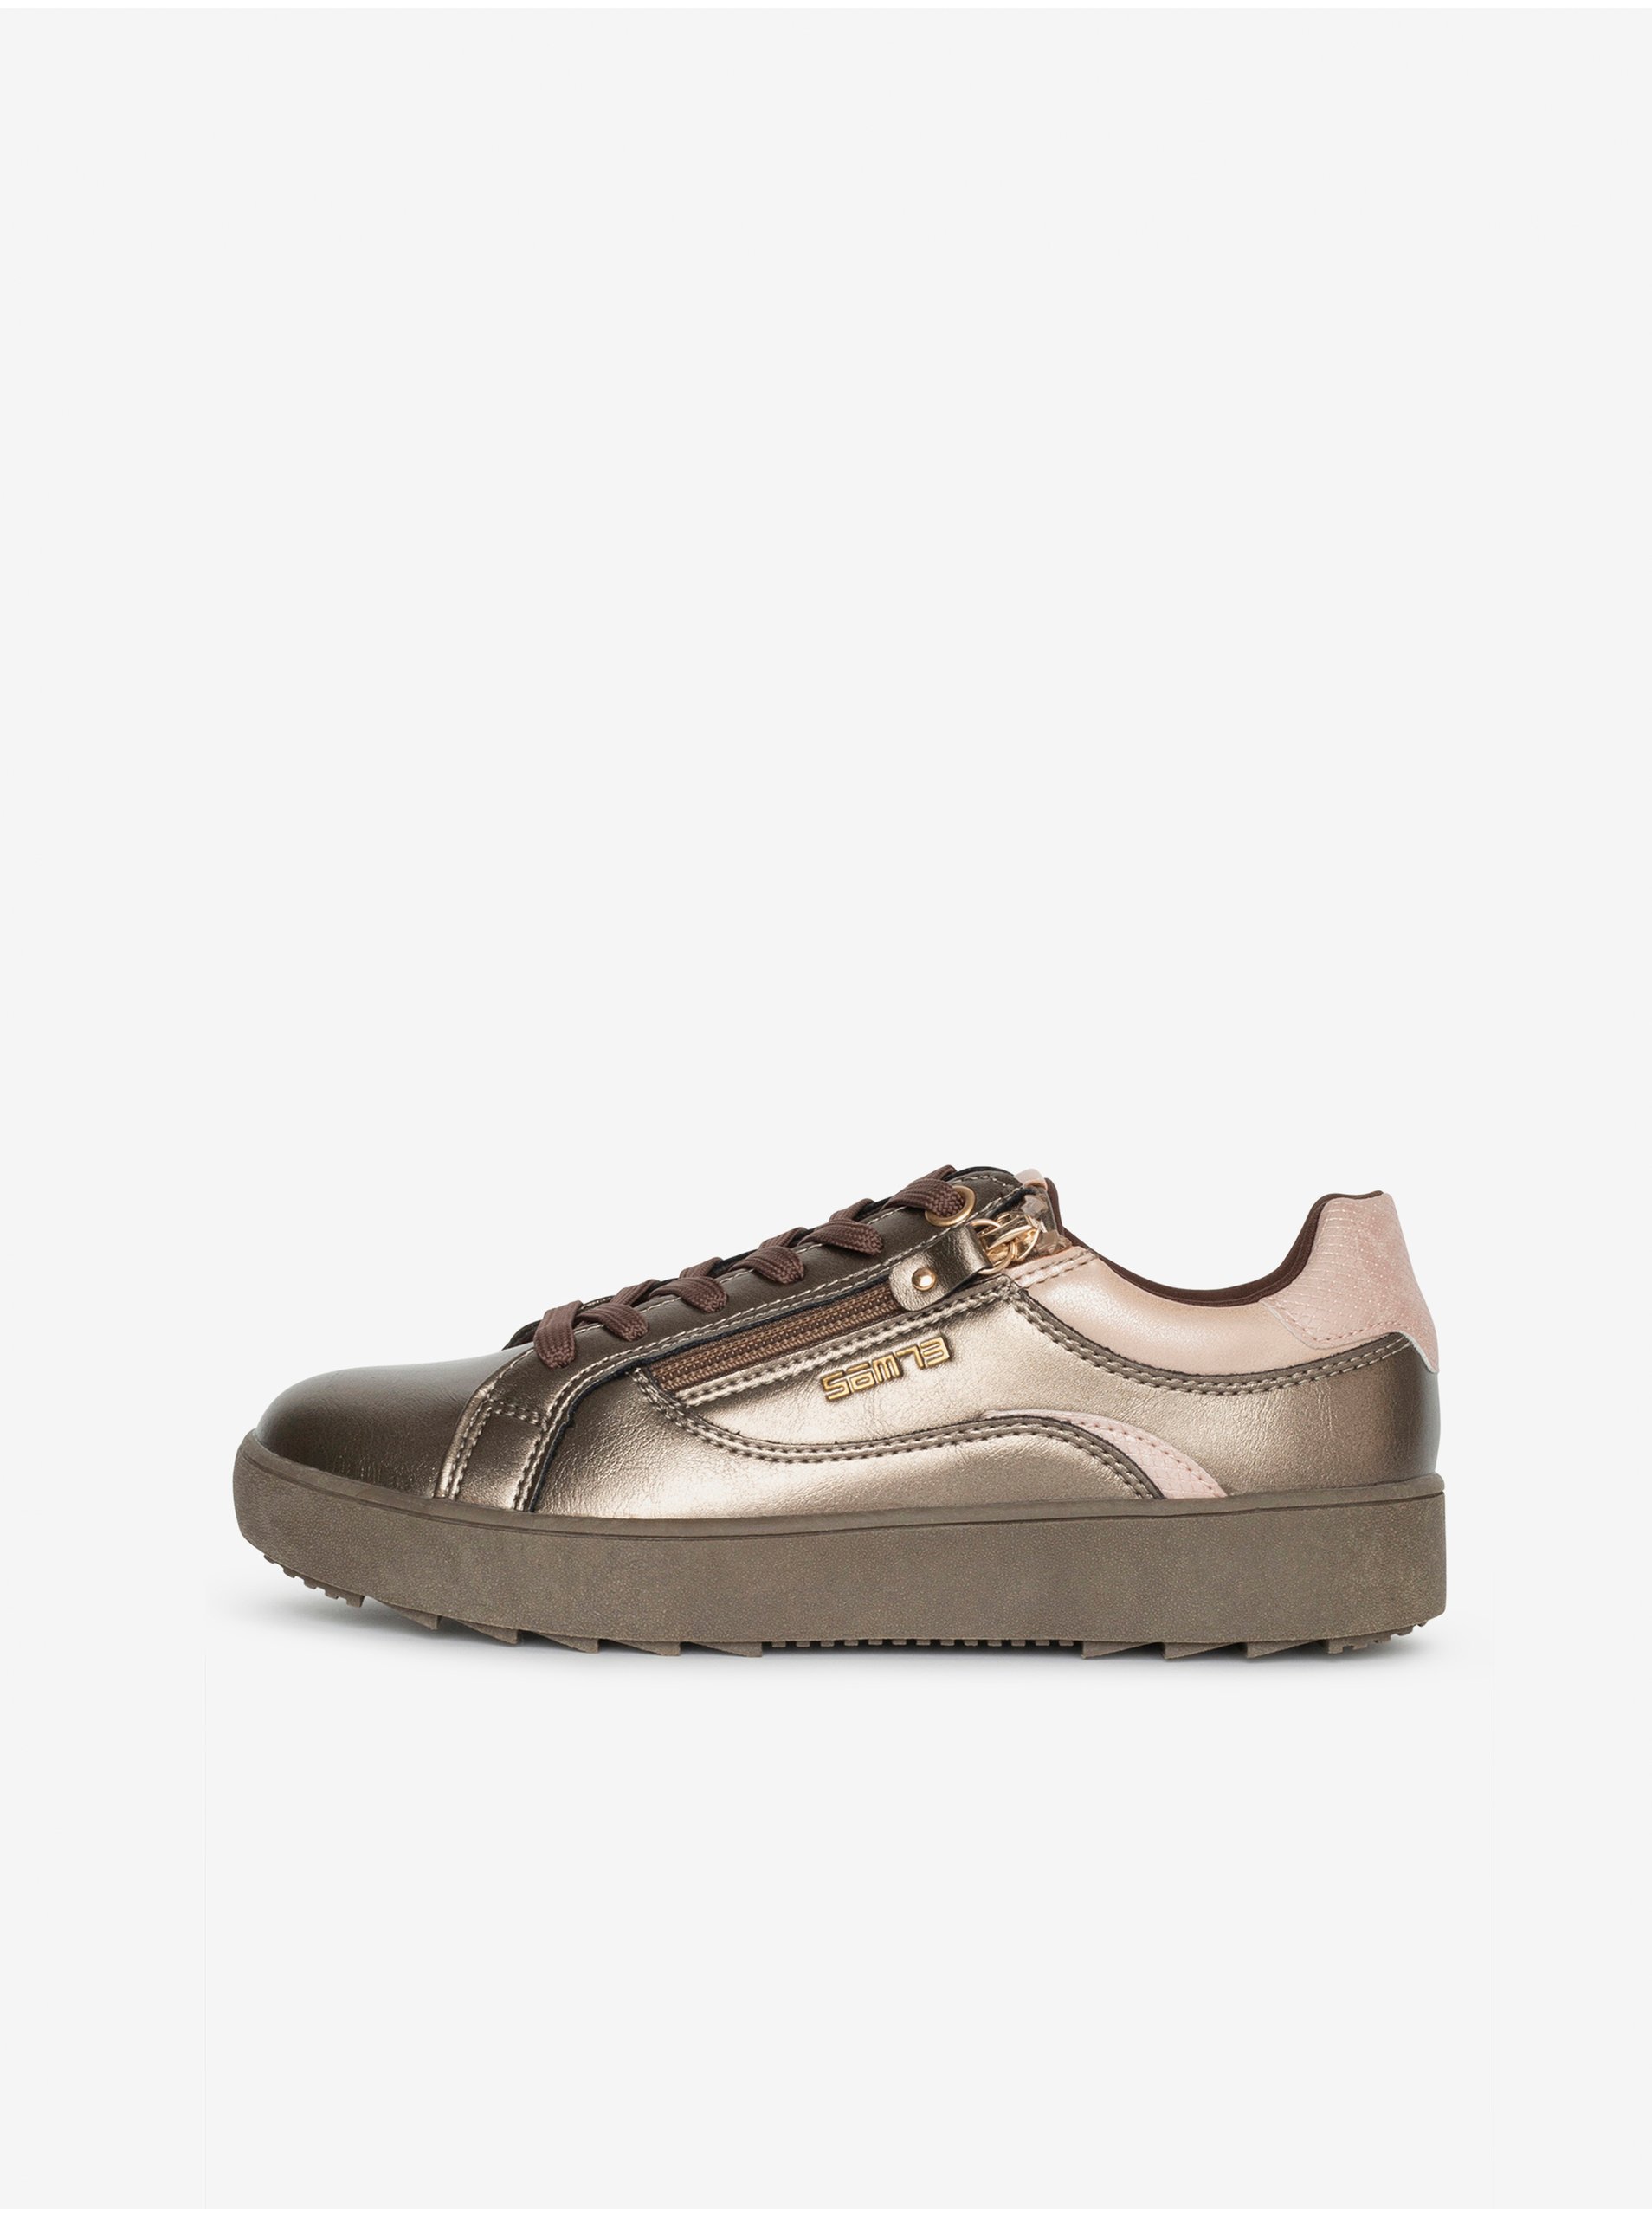 Lacno Dámske topánky v bronzovej farbe SAM 73 Celine